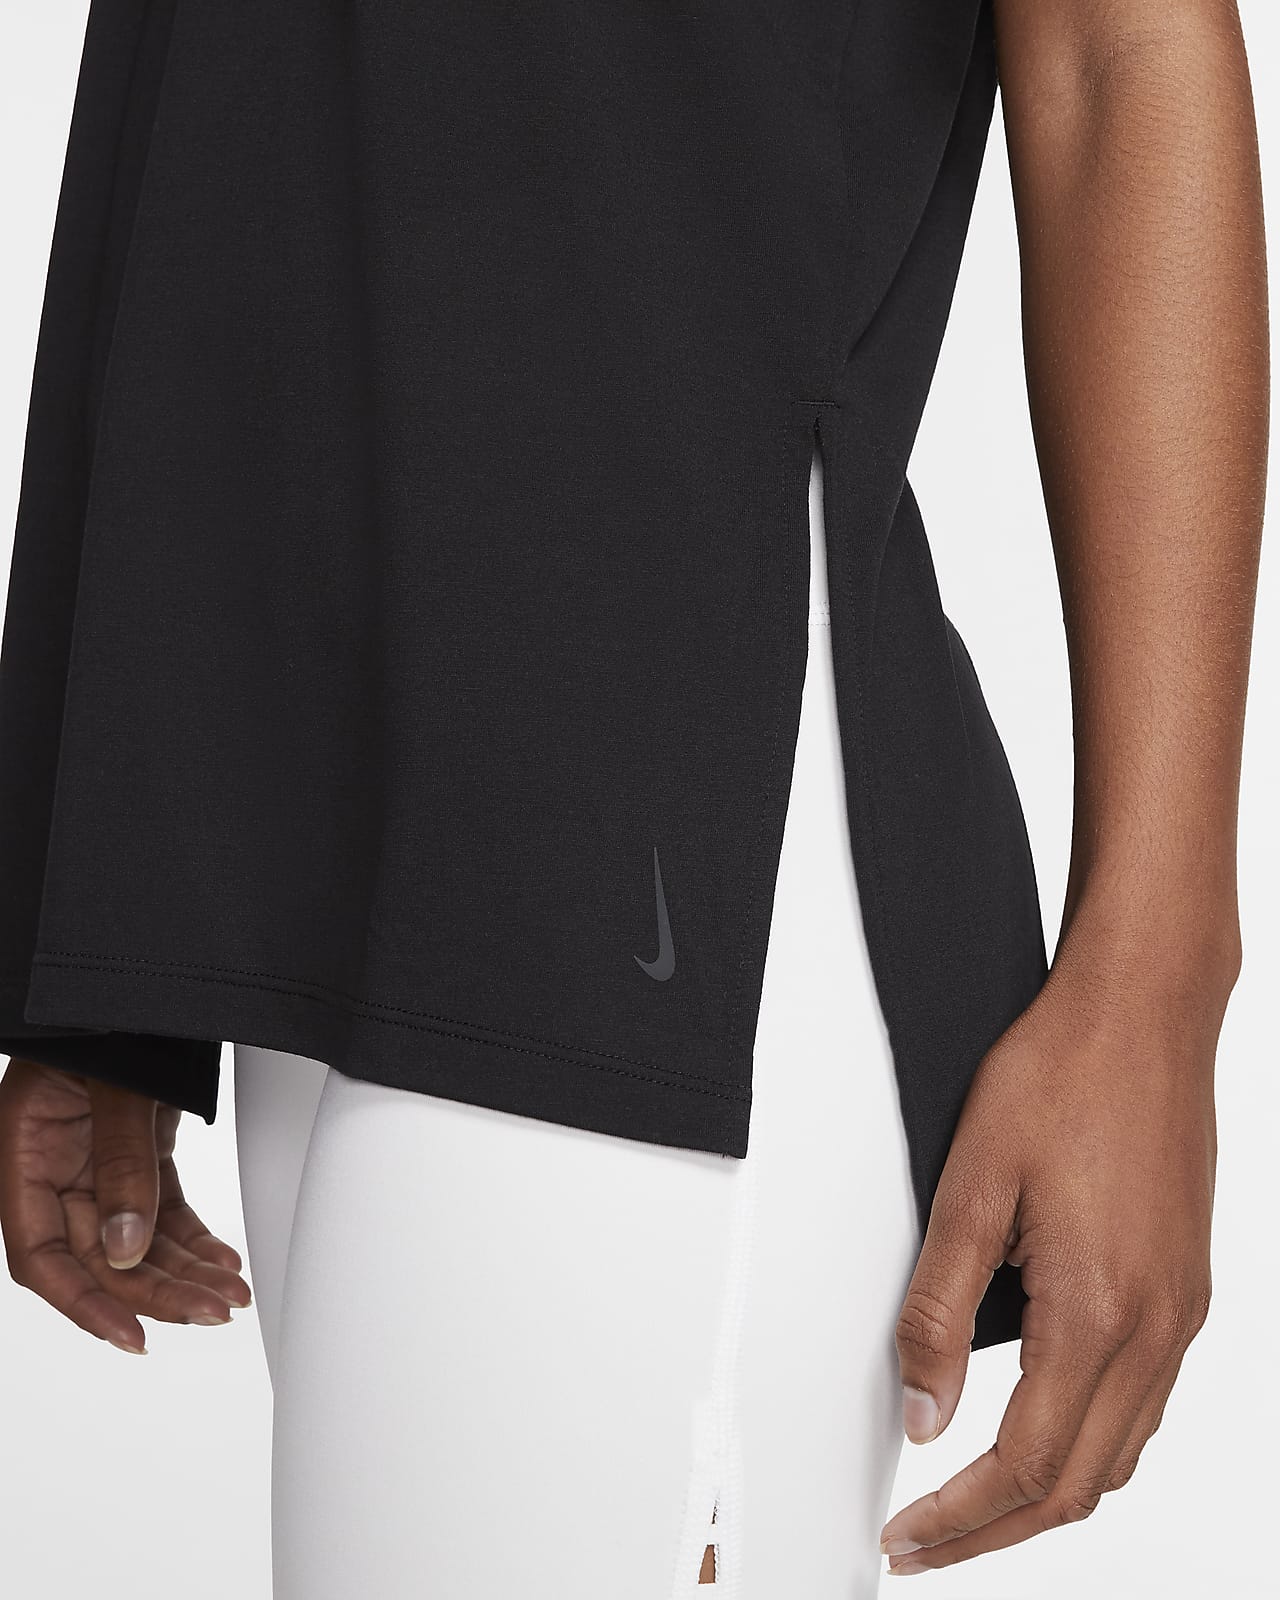 Nike Yoga Women's Short-Sleeve Top. Nike ID